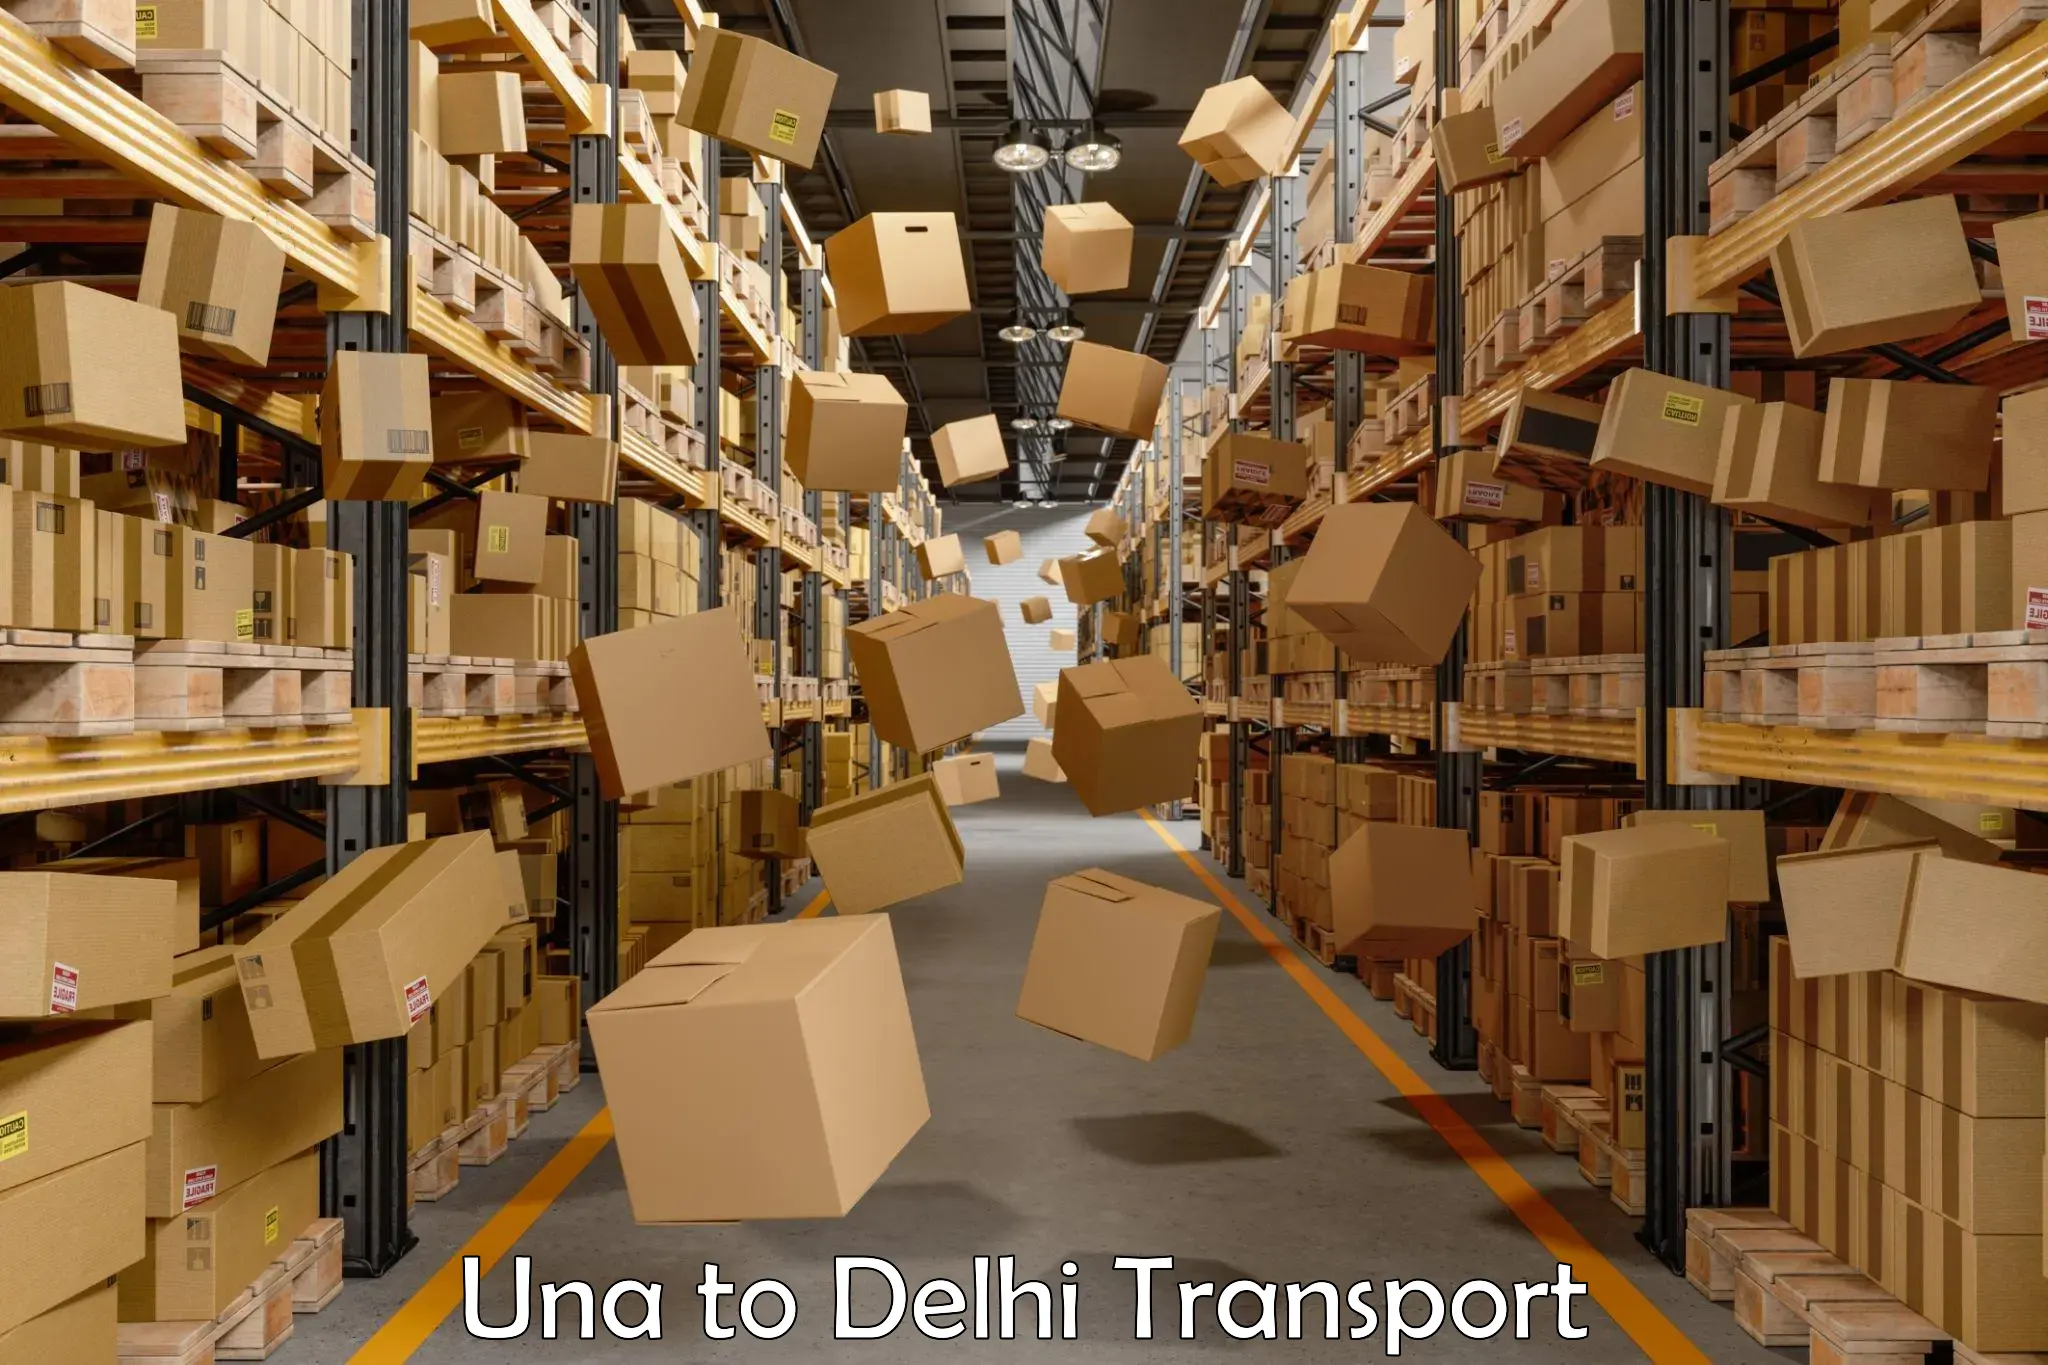 Container transport service in Una to Delhi